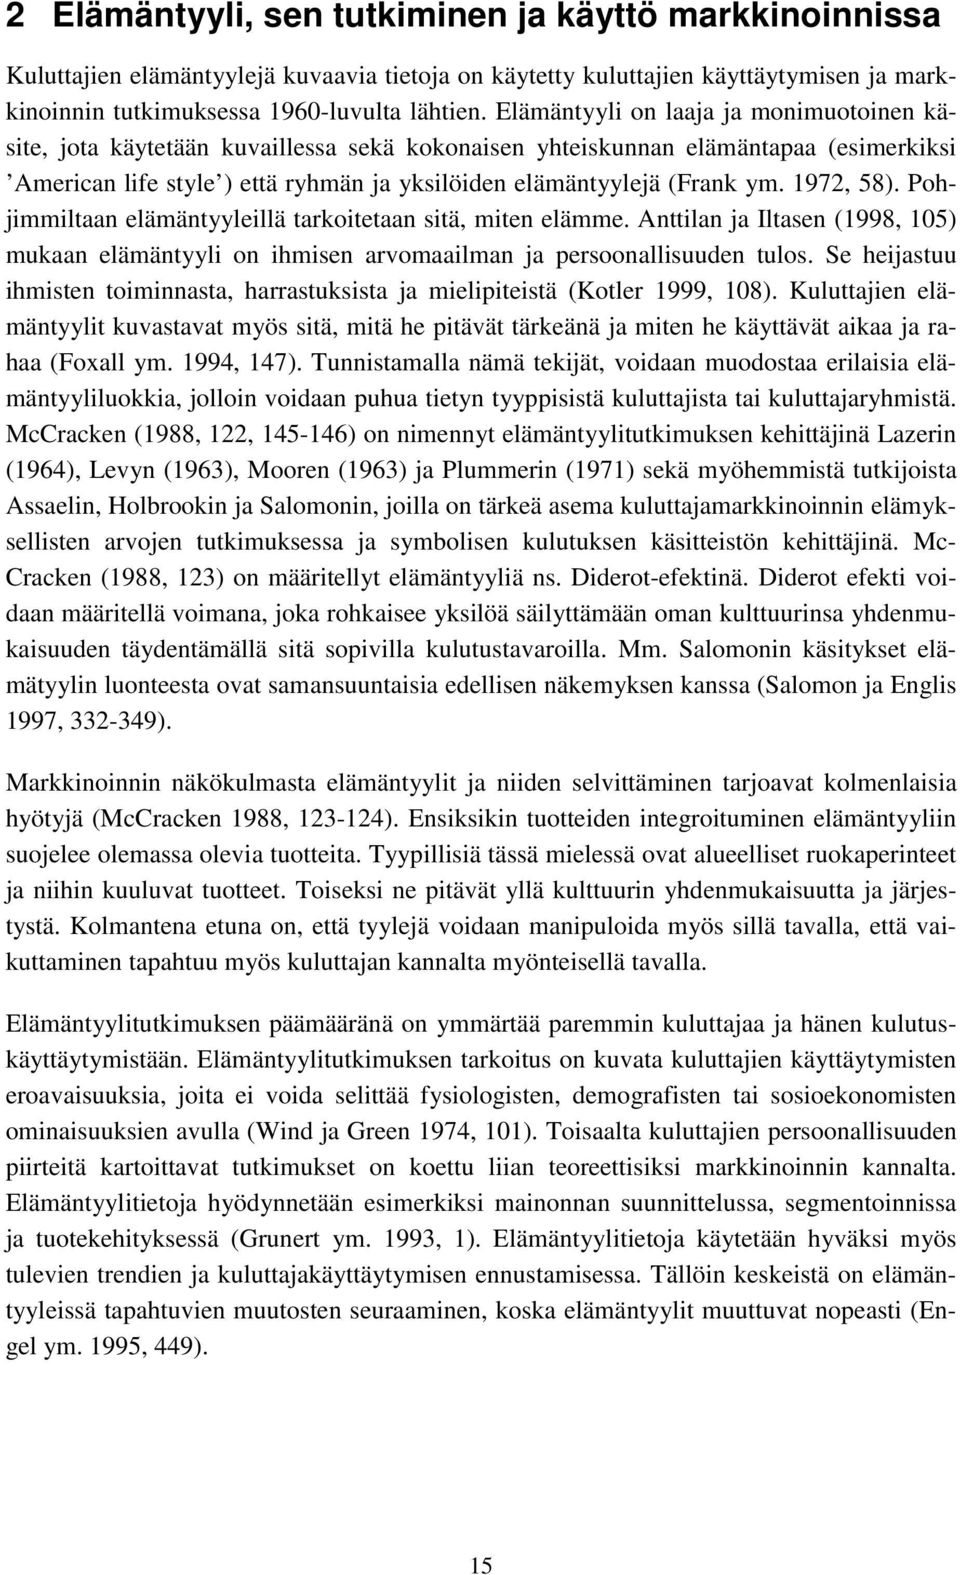 1972, 58). Pohjimmiltaan elämäntyyleillä tarkoitetaan sitä, miten elämme. Anttilan ja Iltasen (1998, 105) mukaan elämäntyyli on ihmisen arvomaailman ja persoonallisuuden tulos.